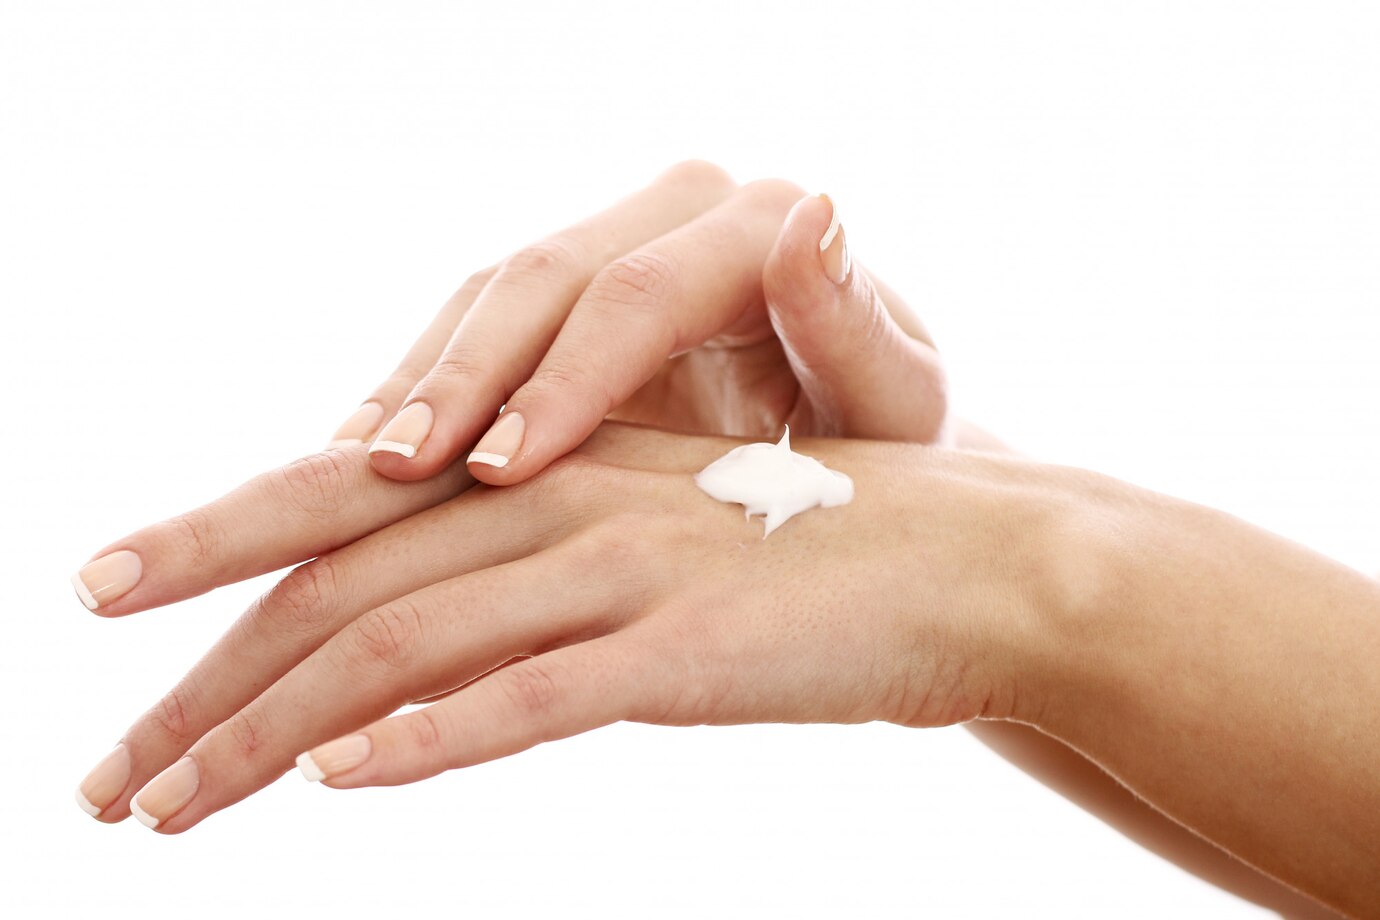 Kem bôi là một trong những phương pháp phổ biến được nhiều người áp dụng dùng để trị sẹo